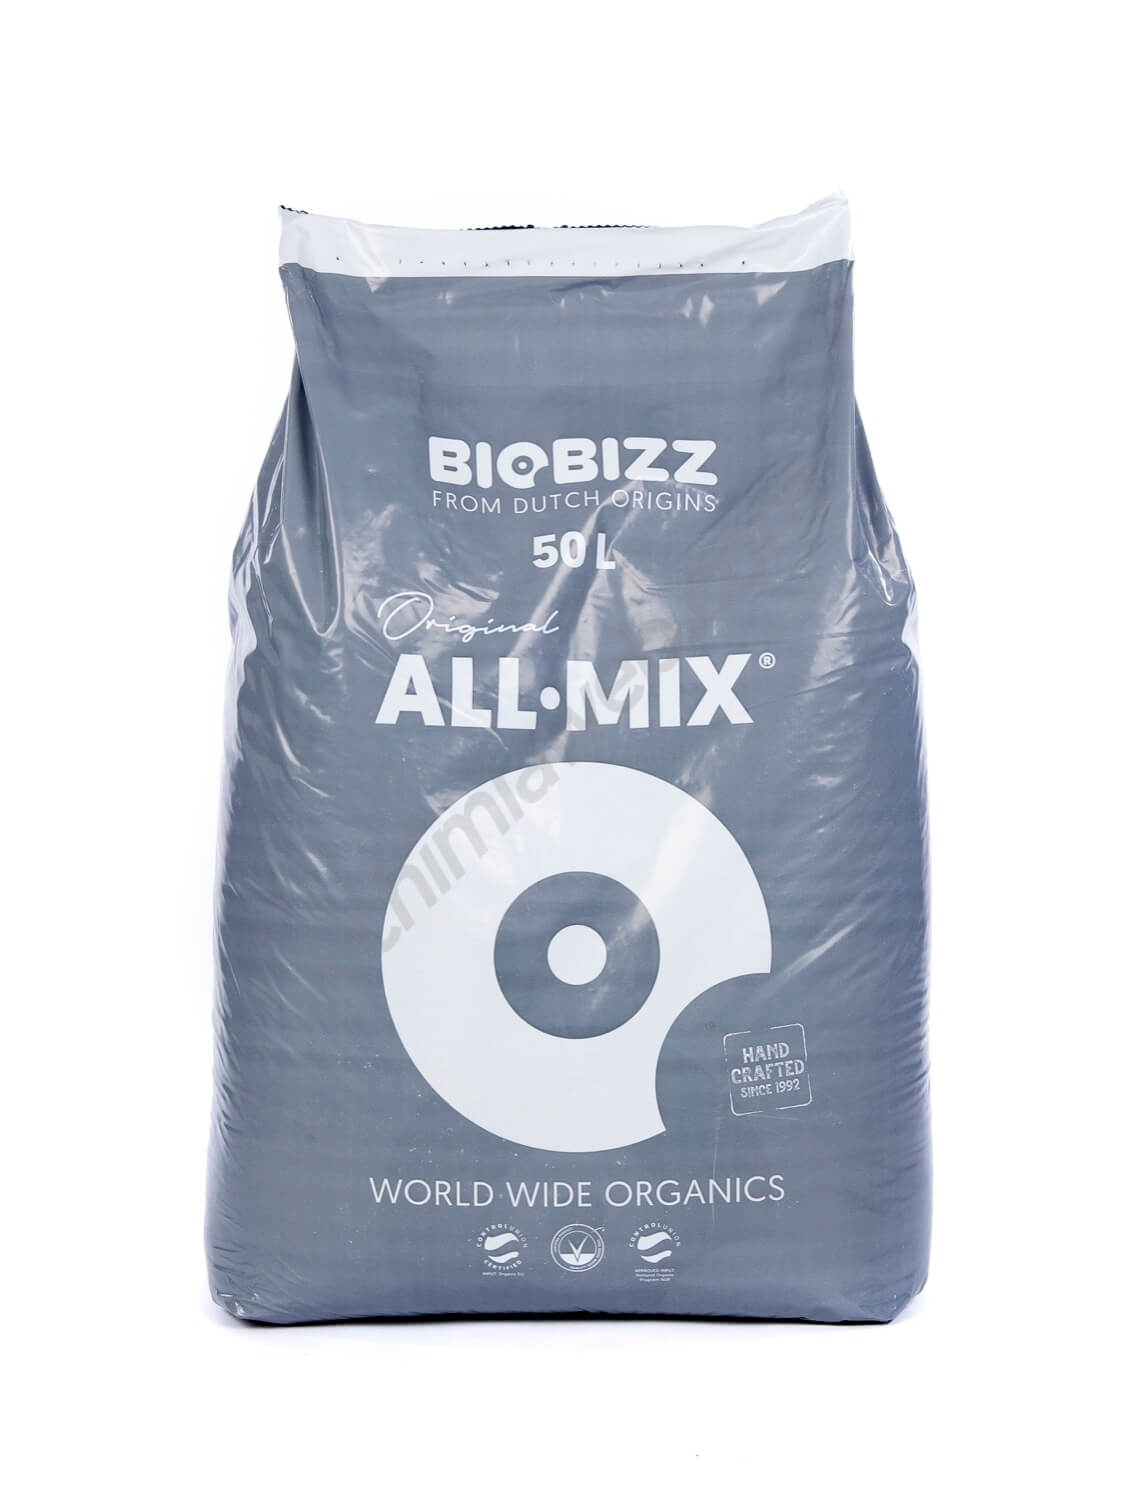 Verkauf von All Mix Bio Bizz